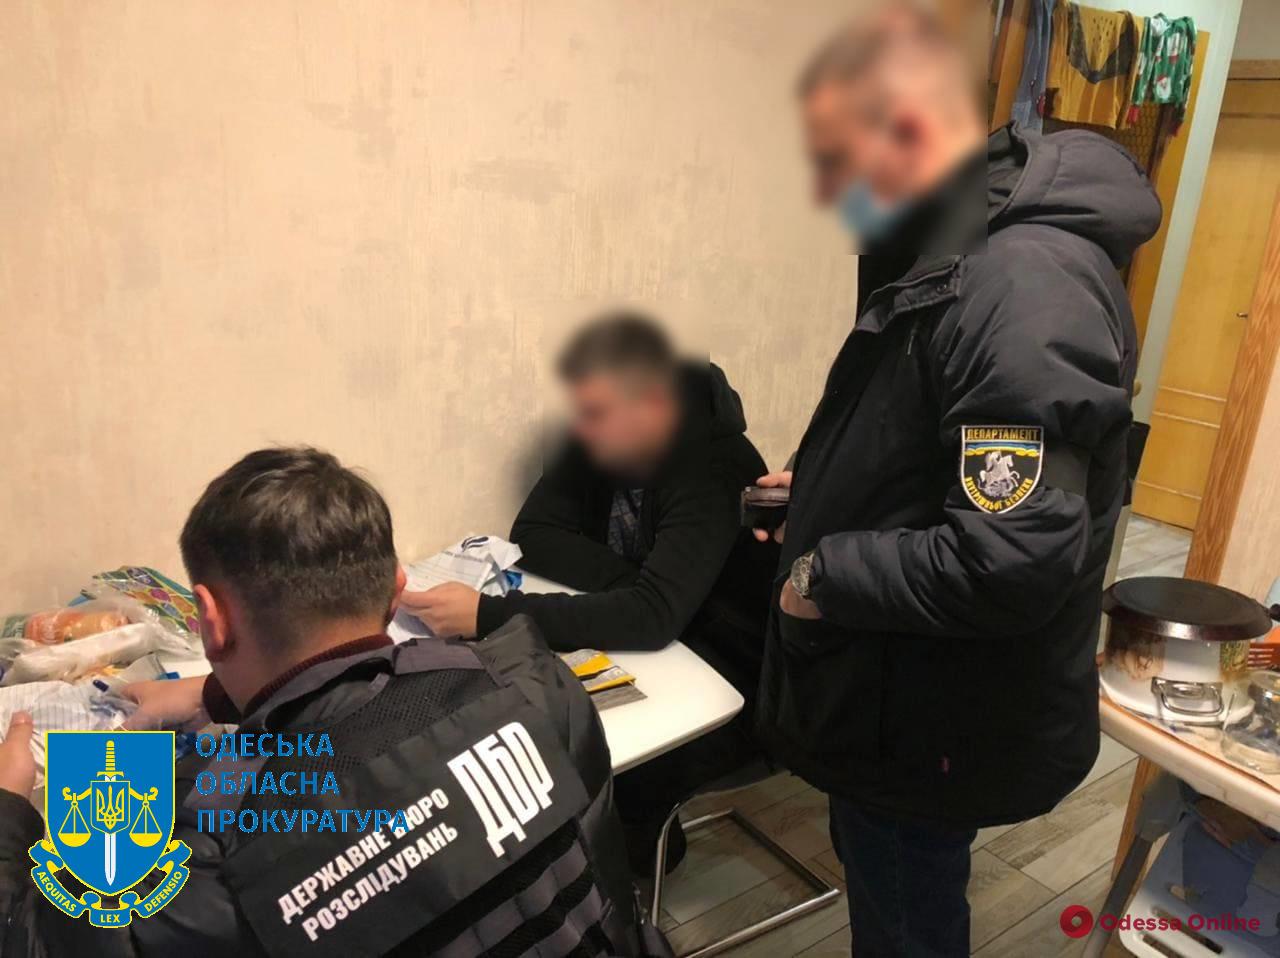 В Одессе задержали двух полицейских, вымогавших 170 тысяч